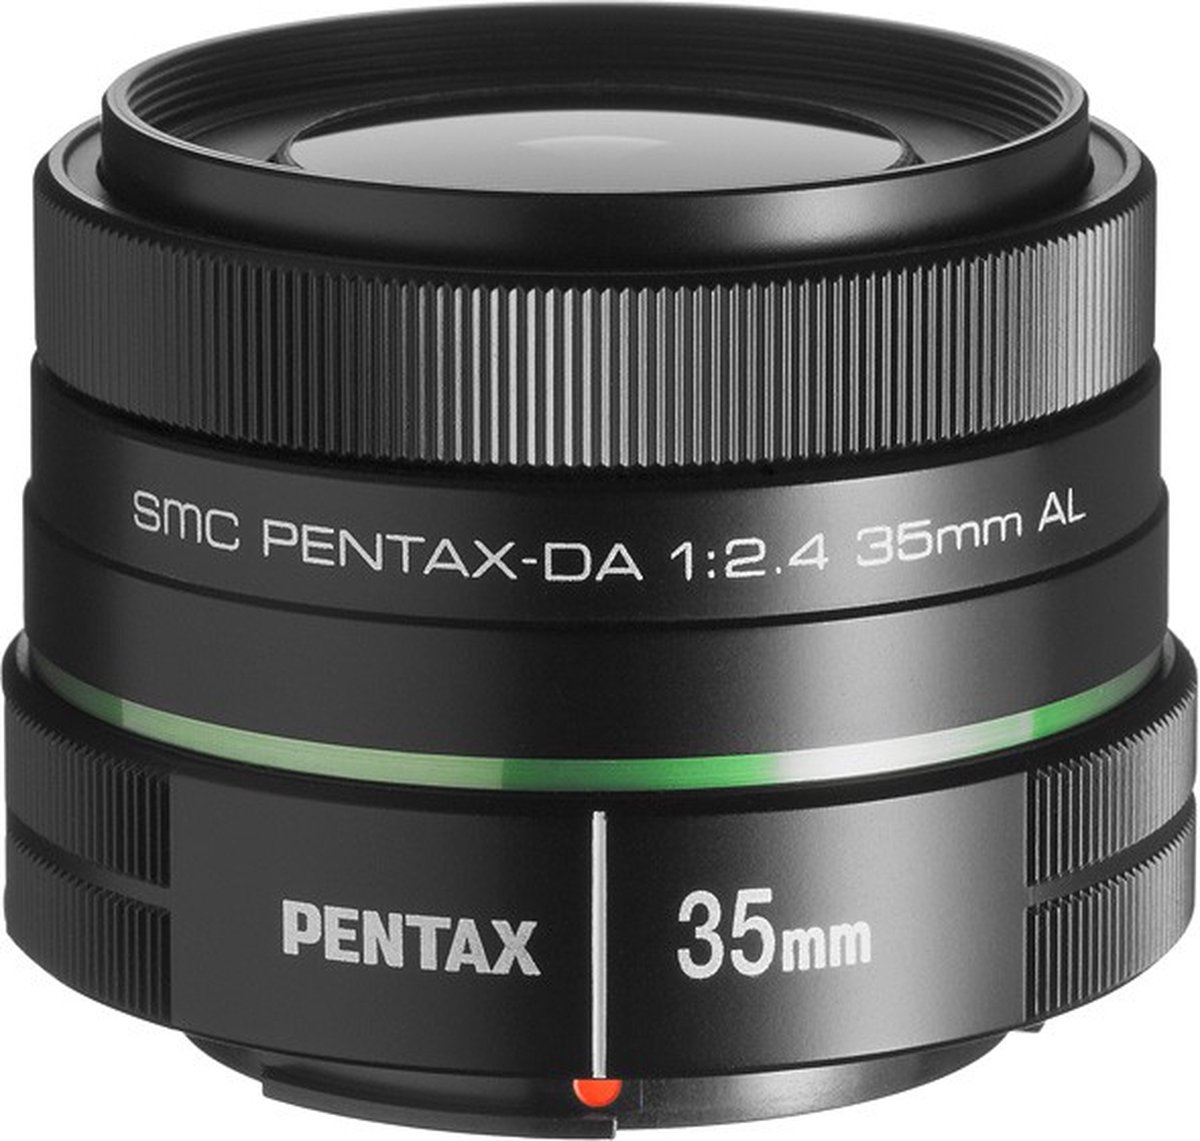 Pentax smc DA 35mm f/2.4 AL - geschikt voor een digitale spiegelreflexcamera van Pentax